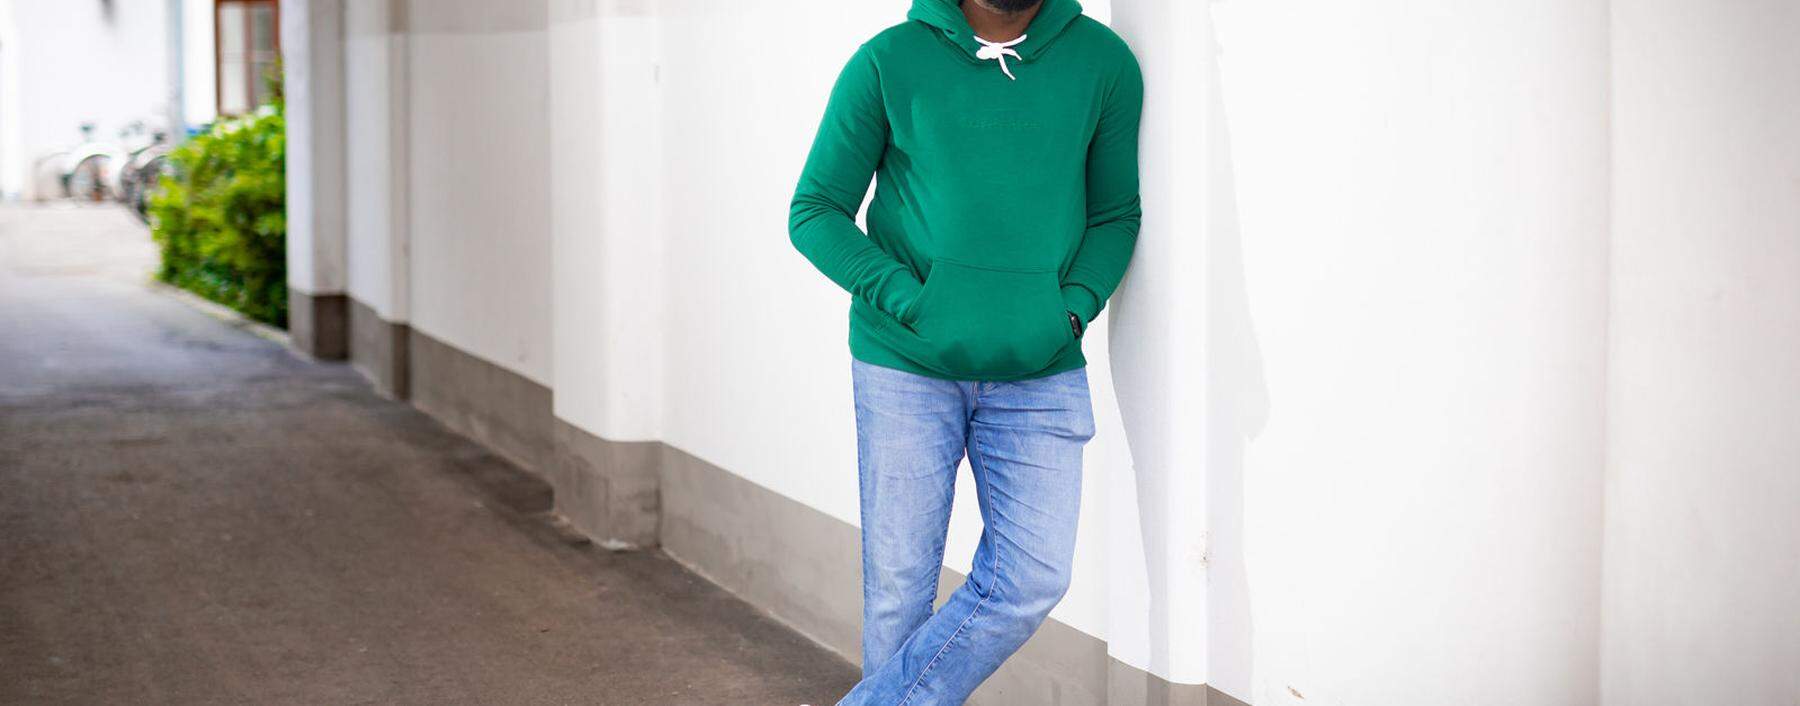 Tolulope Ogunsina ist Mitgründer des Wiener Start-ups Playbrush, das vom Google-Fonds für Black Founders mit einer Förderung im sechsstelligen Bereich ausgezeichnet wurde.